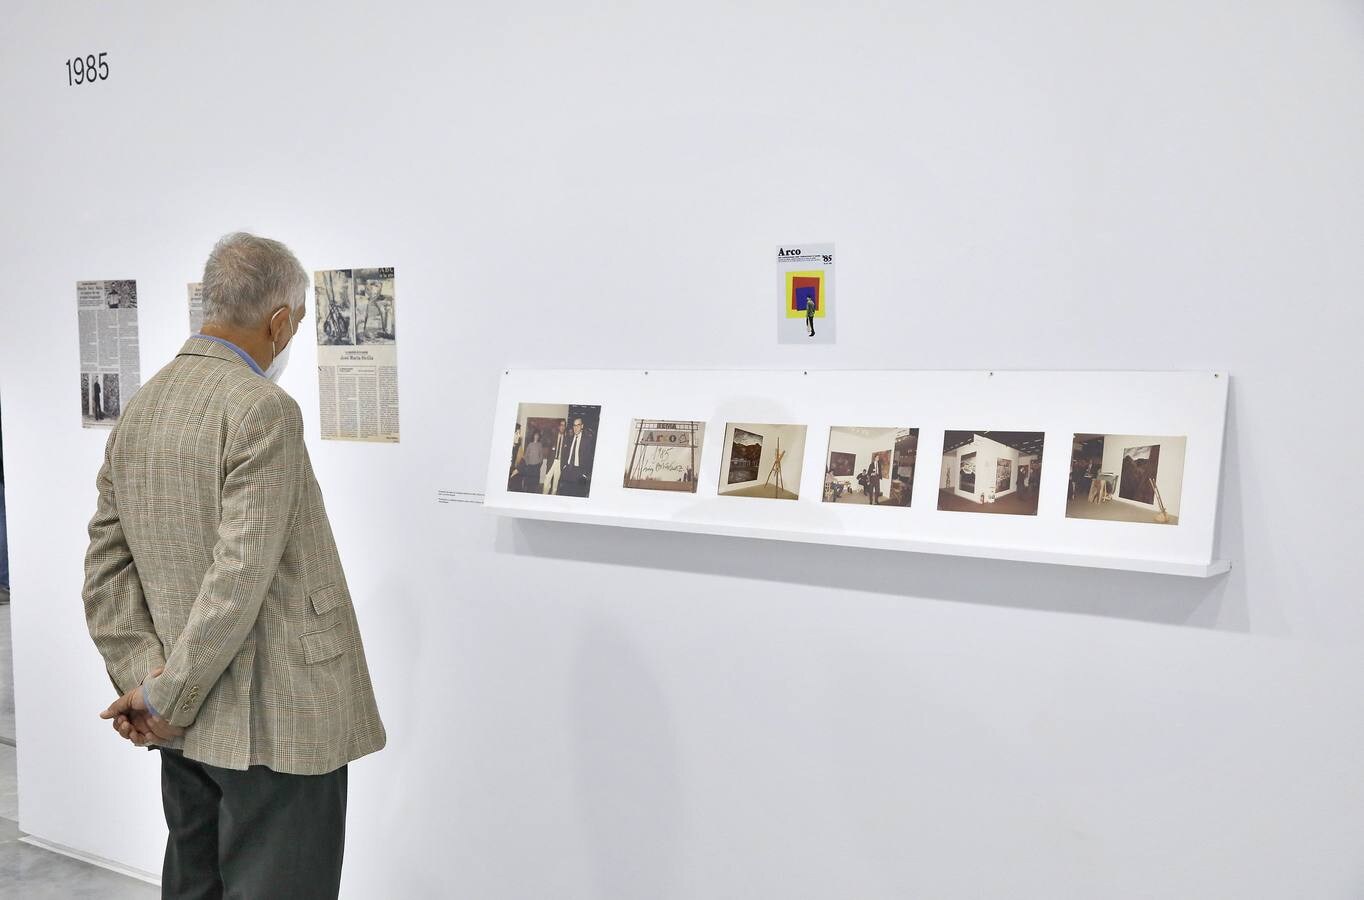 La exposición &#039;La Máquina Española&#039; revisa en el CAAC el impacto de la galería andaluza en el arte español de los 80